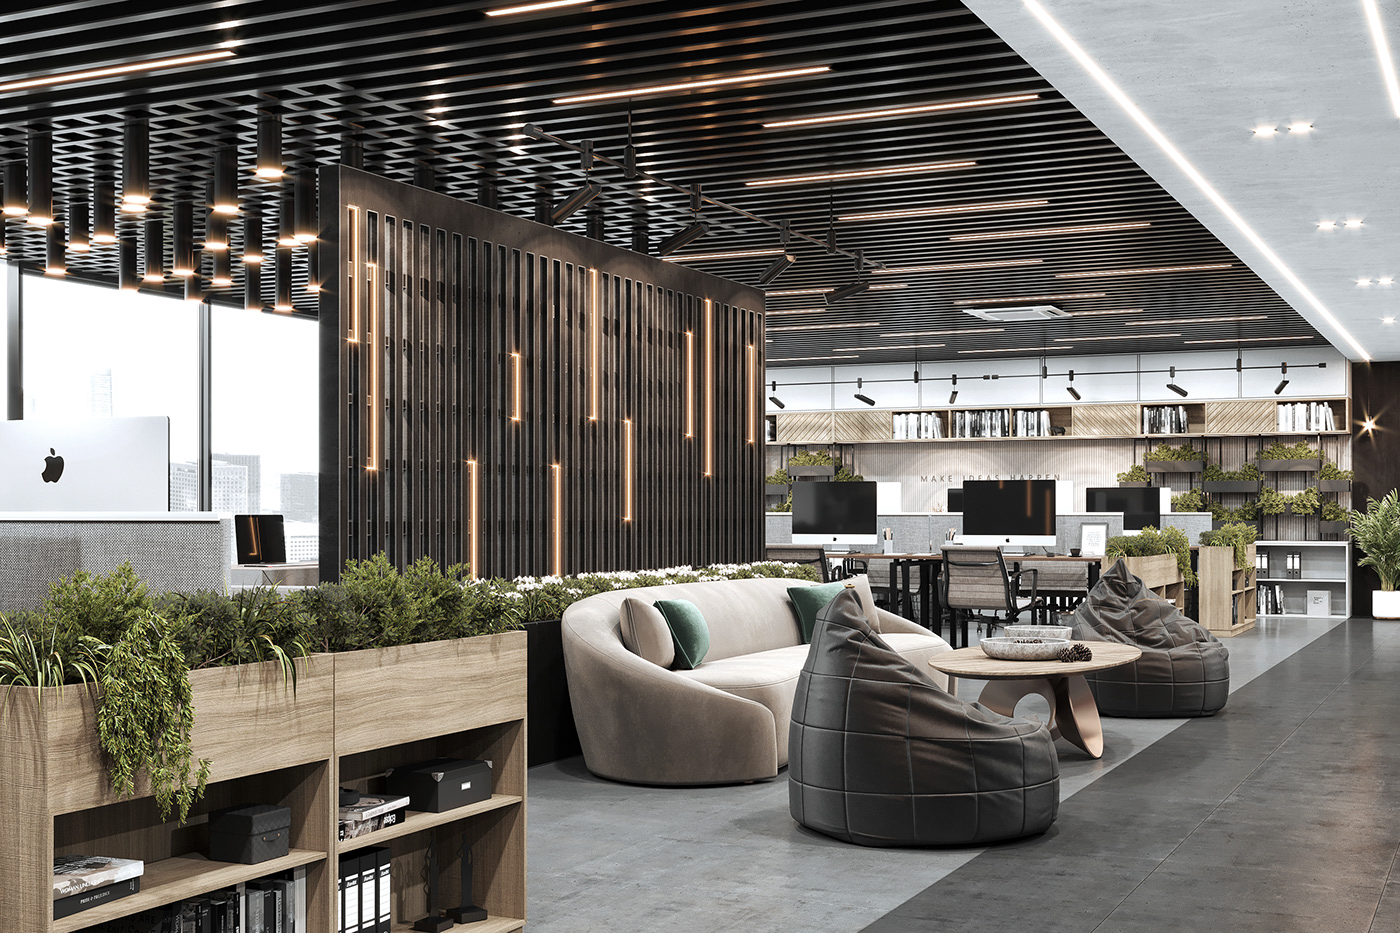 3ds max corona renderer dark design industrial Interior Kuwait modern Office